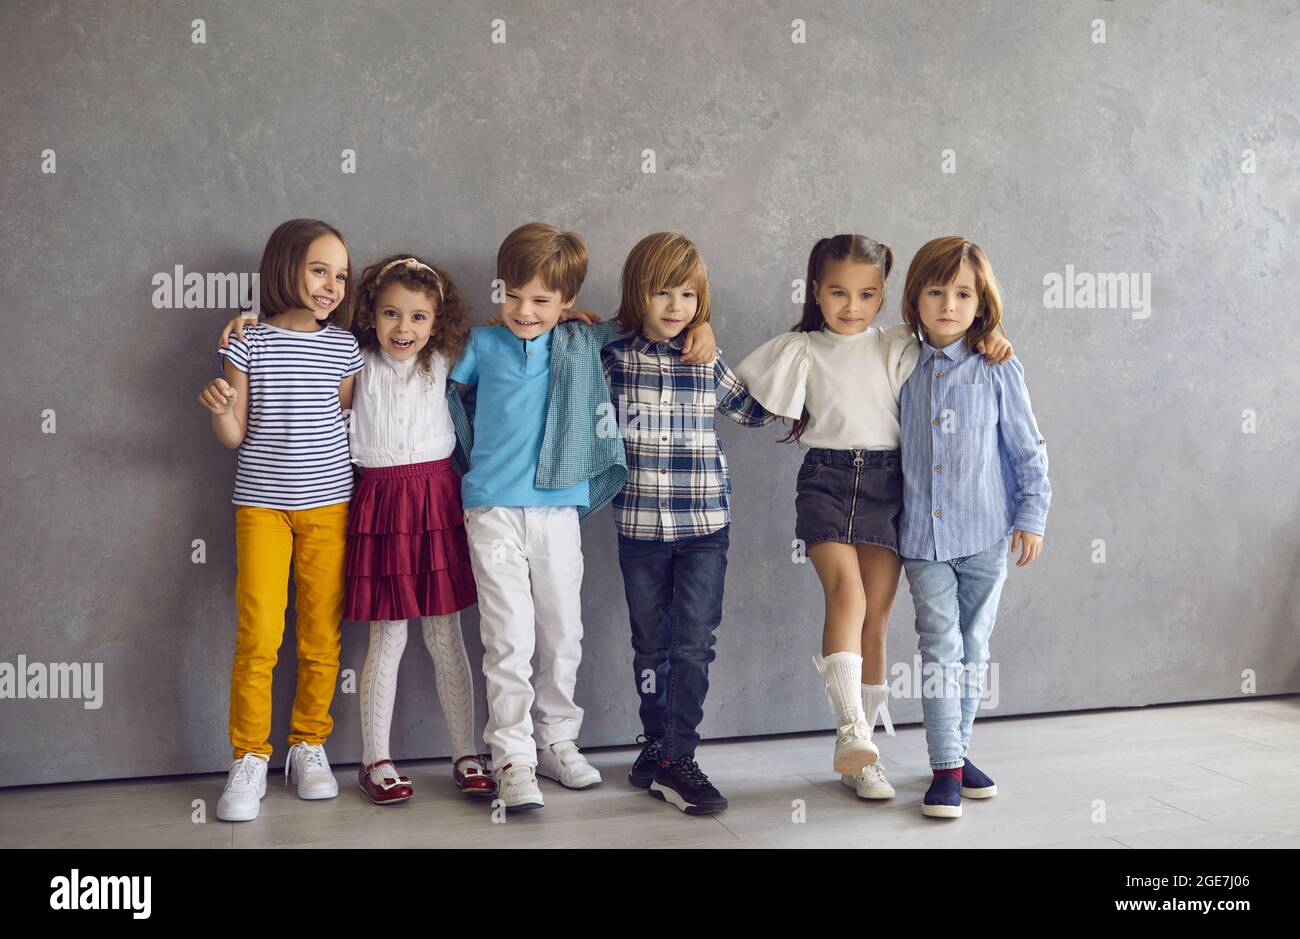 Retrato de niños y niñas que se divierten juntos de pie contra el telón de fondo de una pared gris. Foto de stock